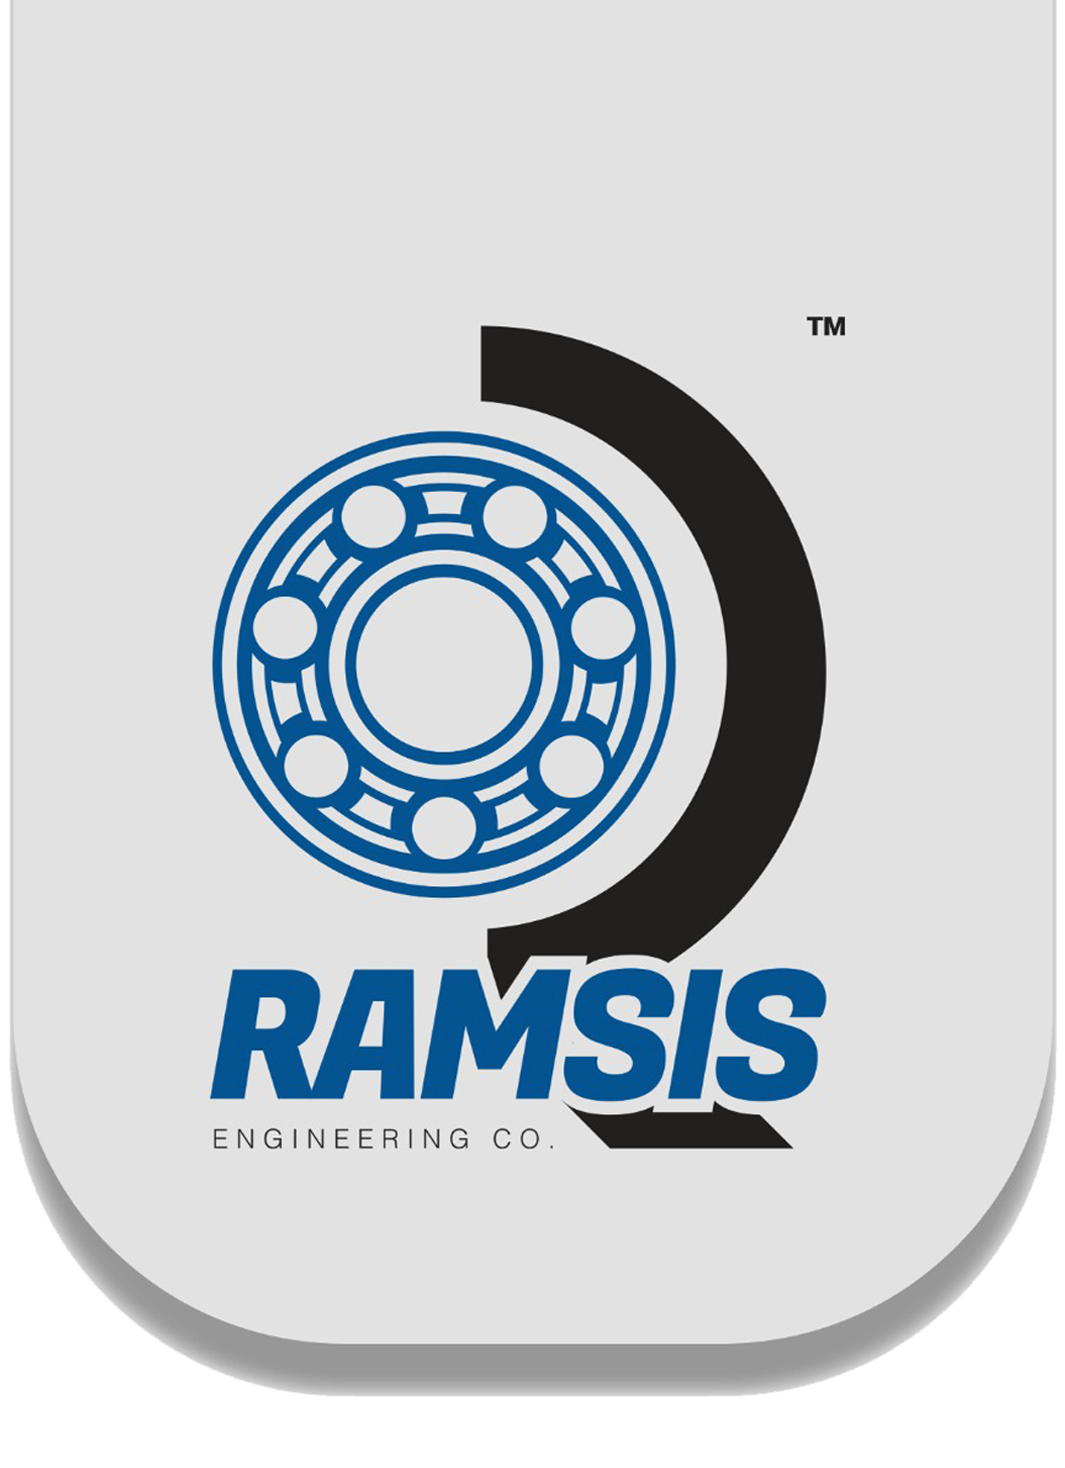 Ramsis Engineering Co